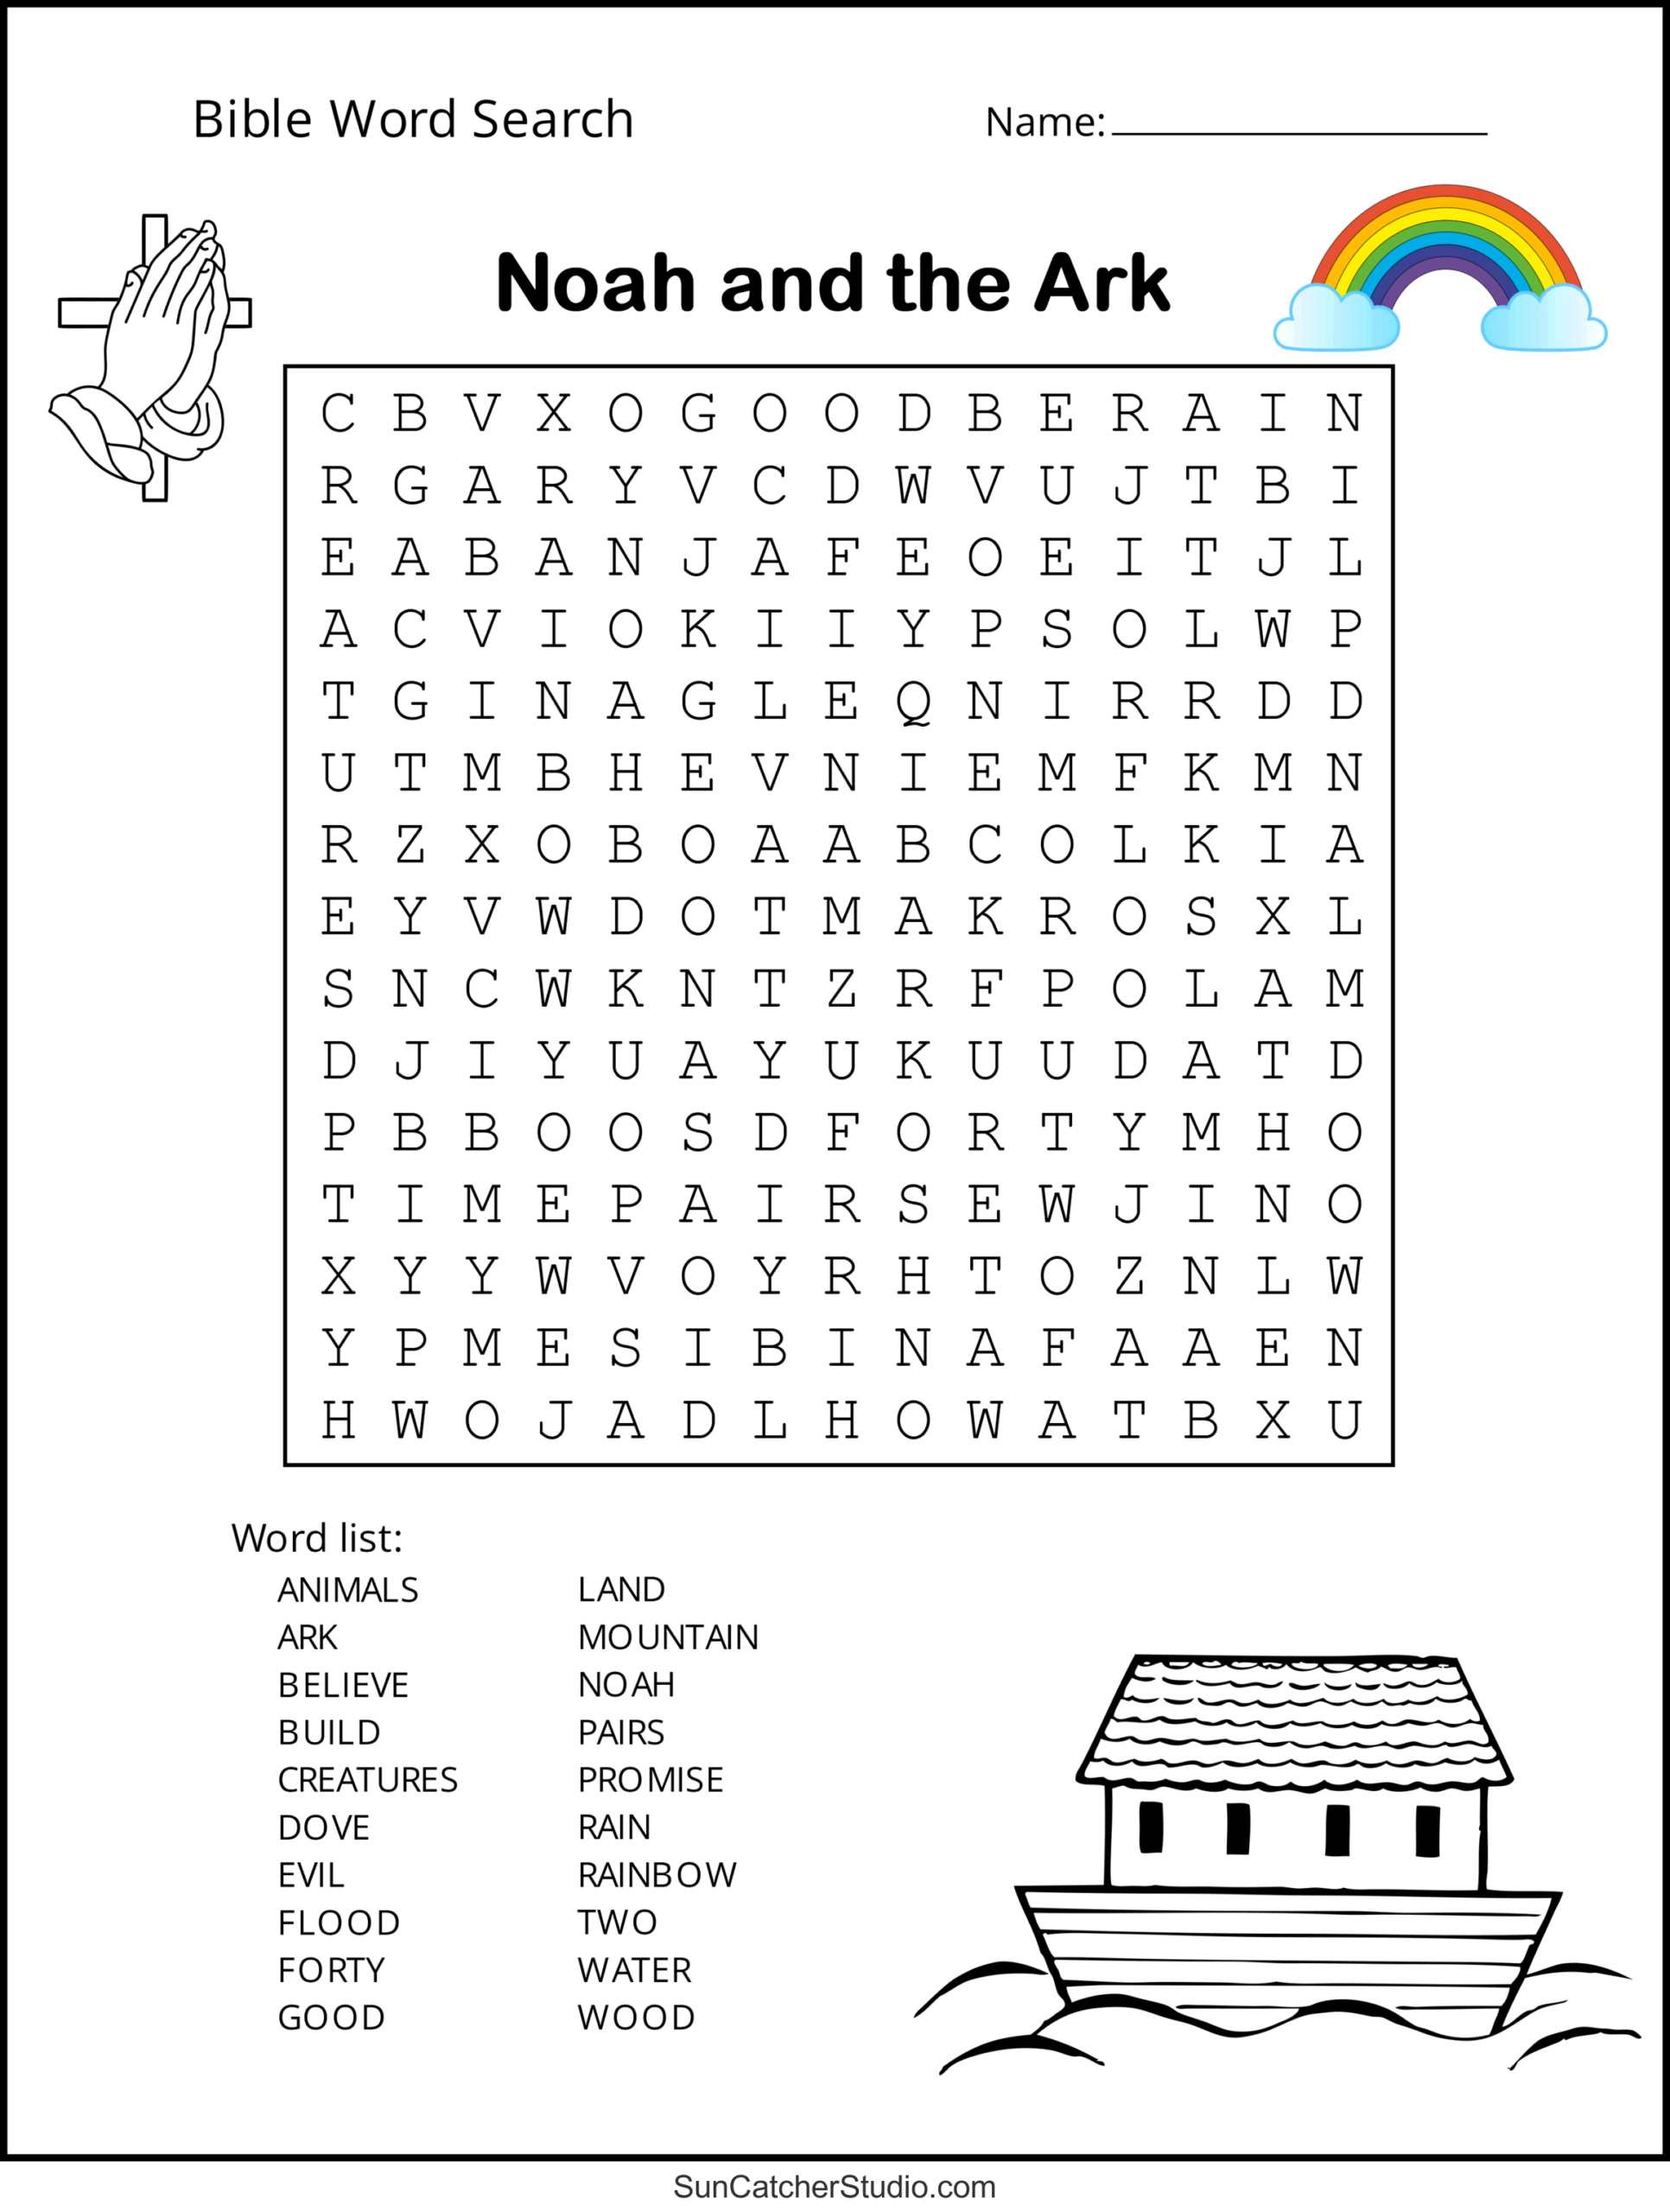 Bible Word Search (Free Printable Christian Puzzles) – Diy pertaining to Christian Word Search Puzzles Free Printable